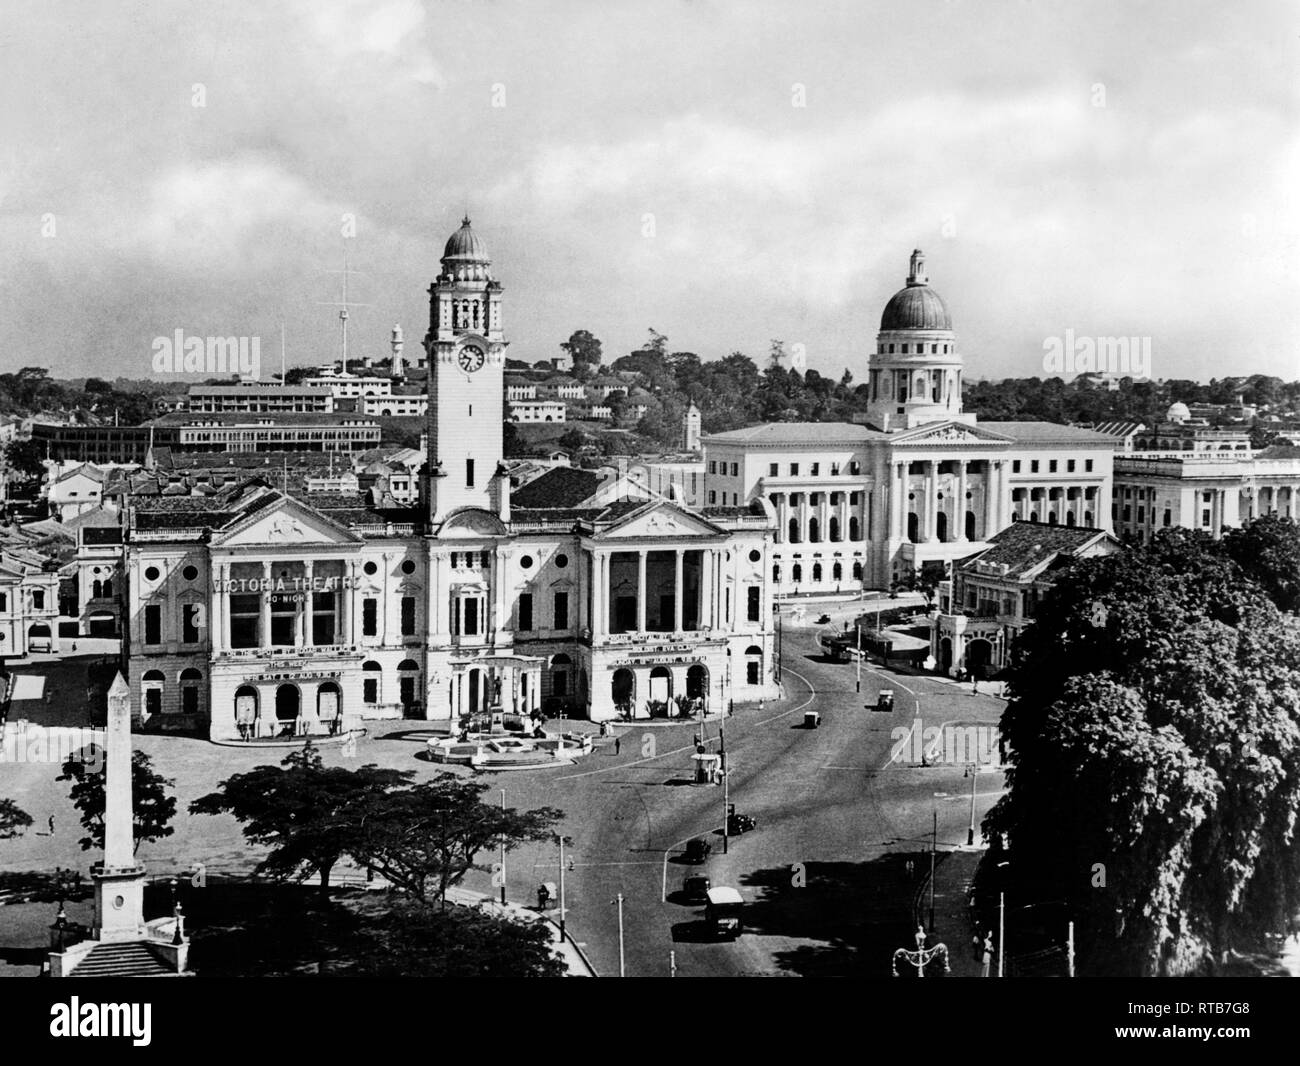 La Malaysia, Singapore, il teatro Victoria Memorial Hall, la Corte suprema, Fort Canning e il quartiere militare, 1959 Foto Stock